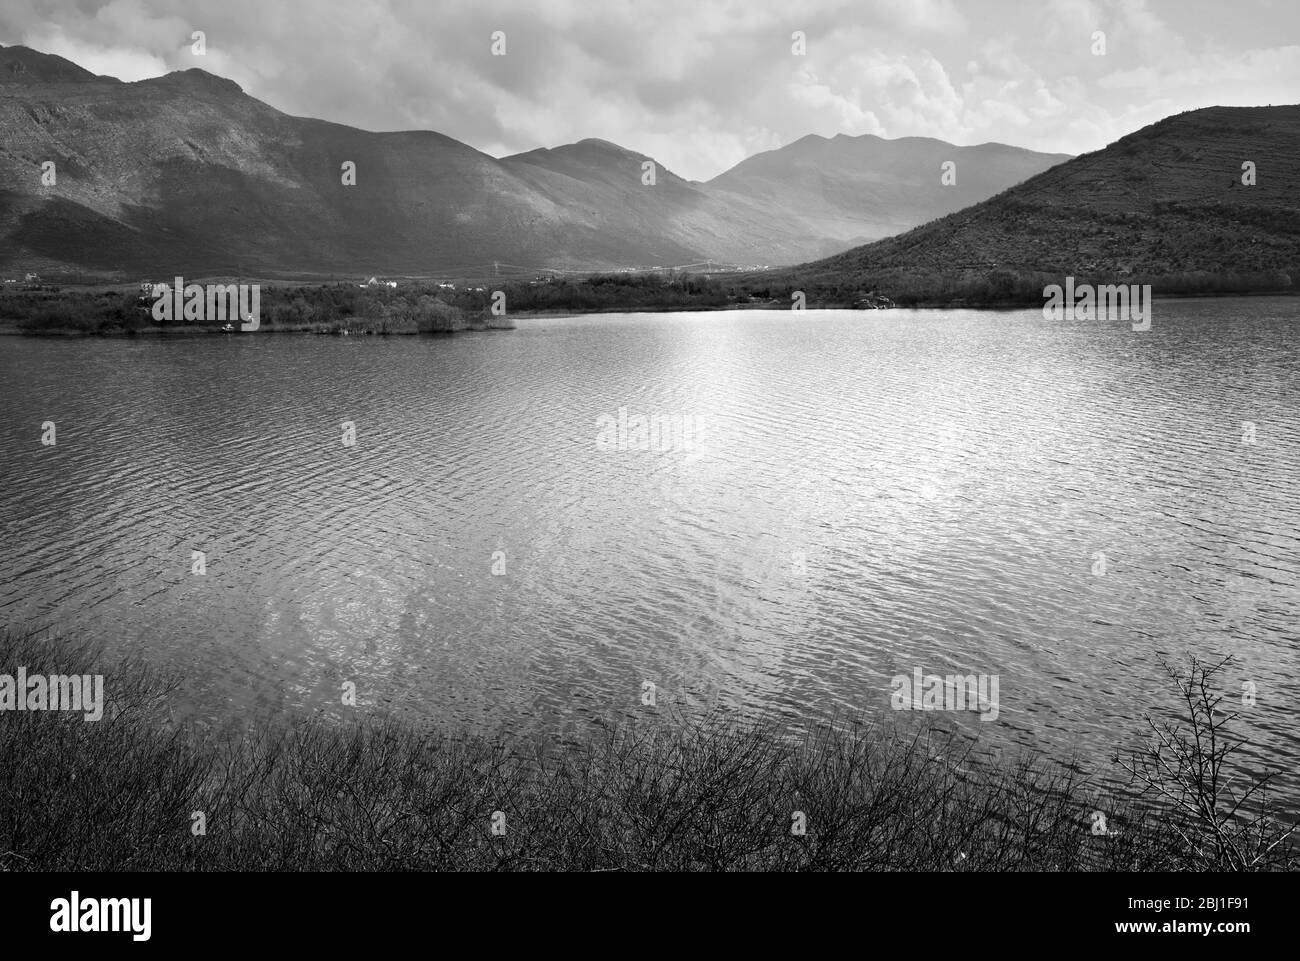 Hani i Hotit. Lake Shkoder. Albania Stock Photo